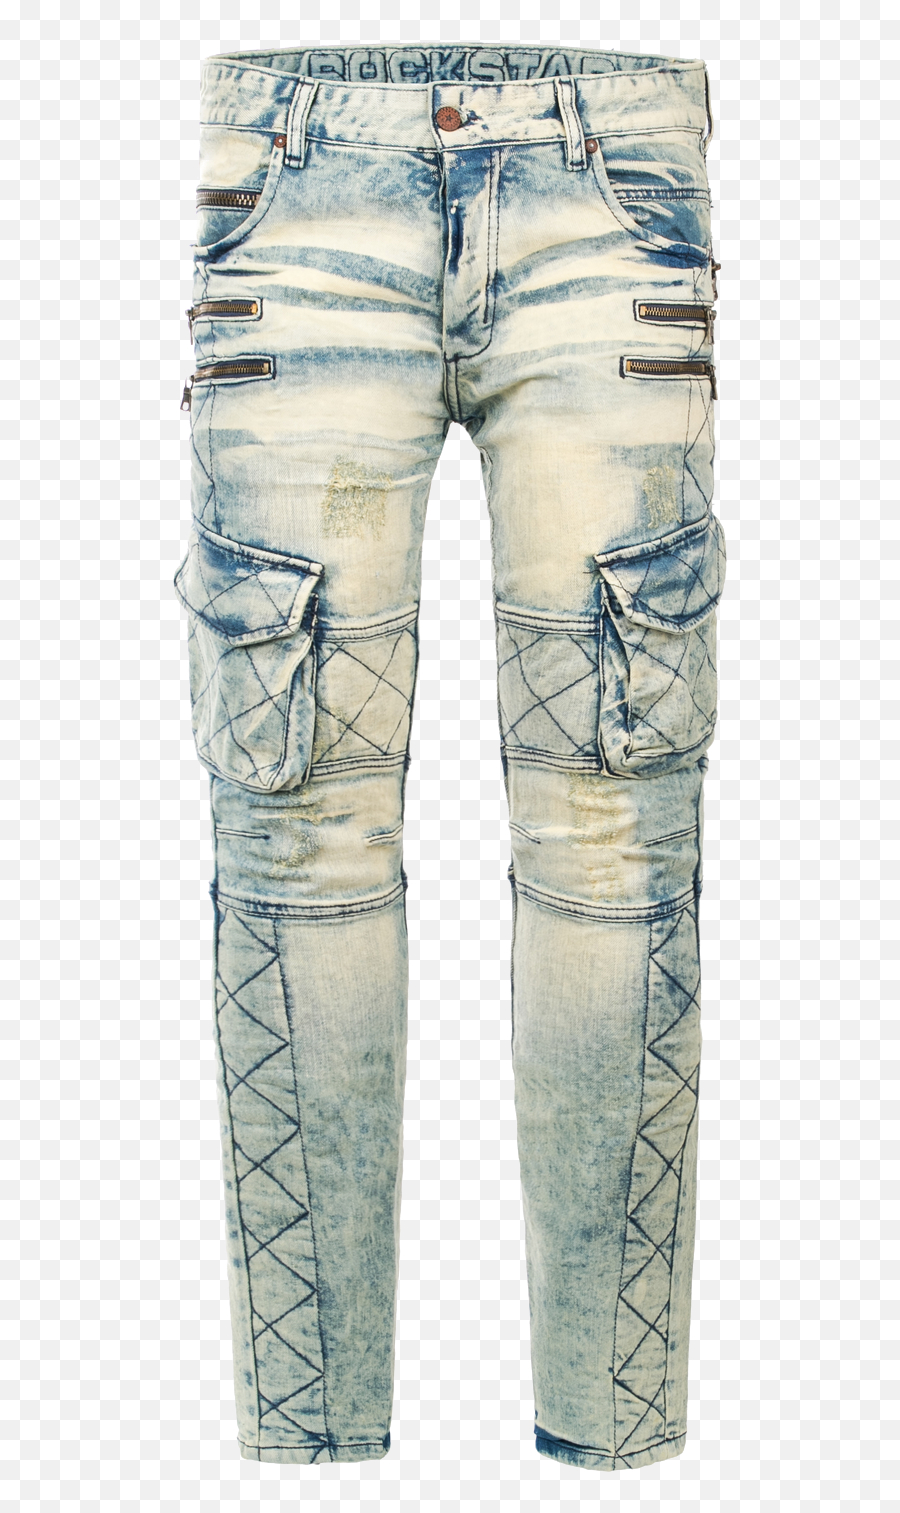 Biker Jeans Png Image With Transparent - Pocket,Jeans Transparent Background